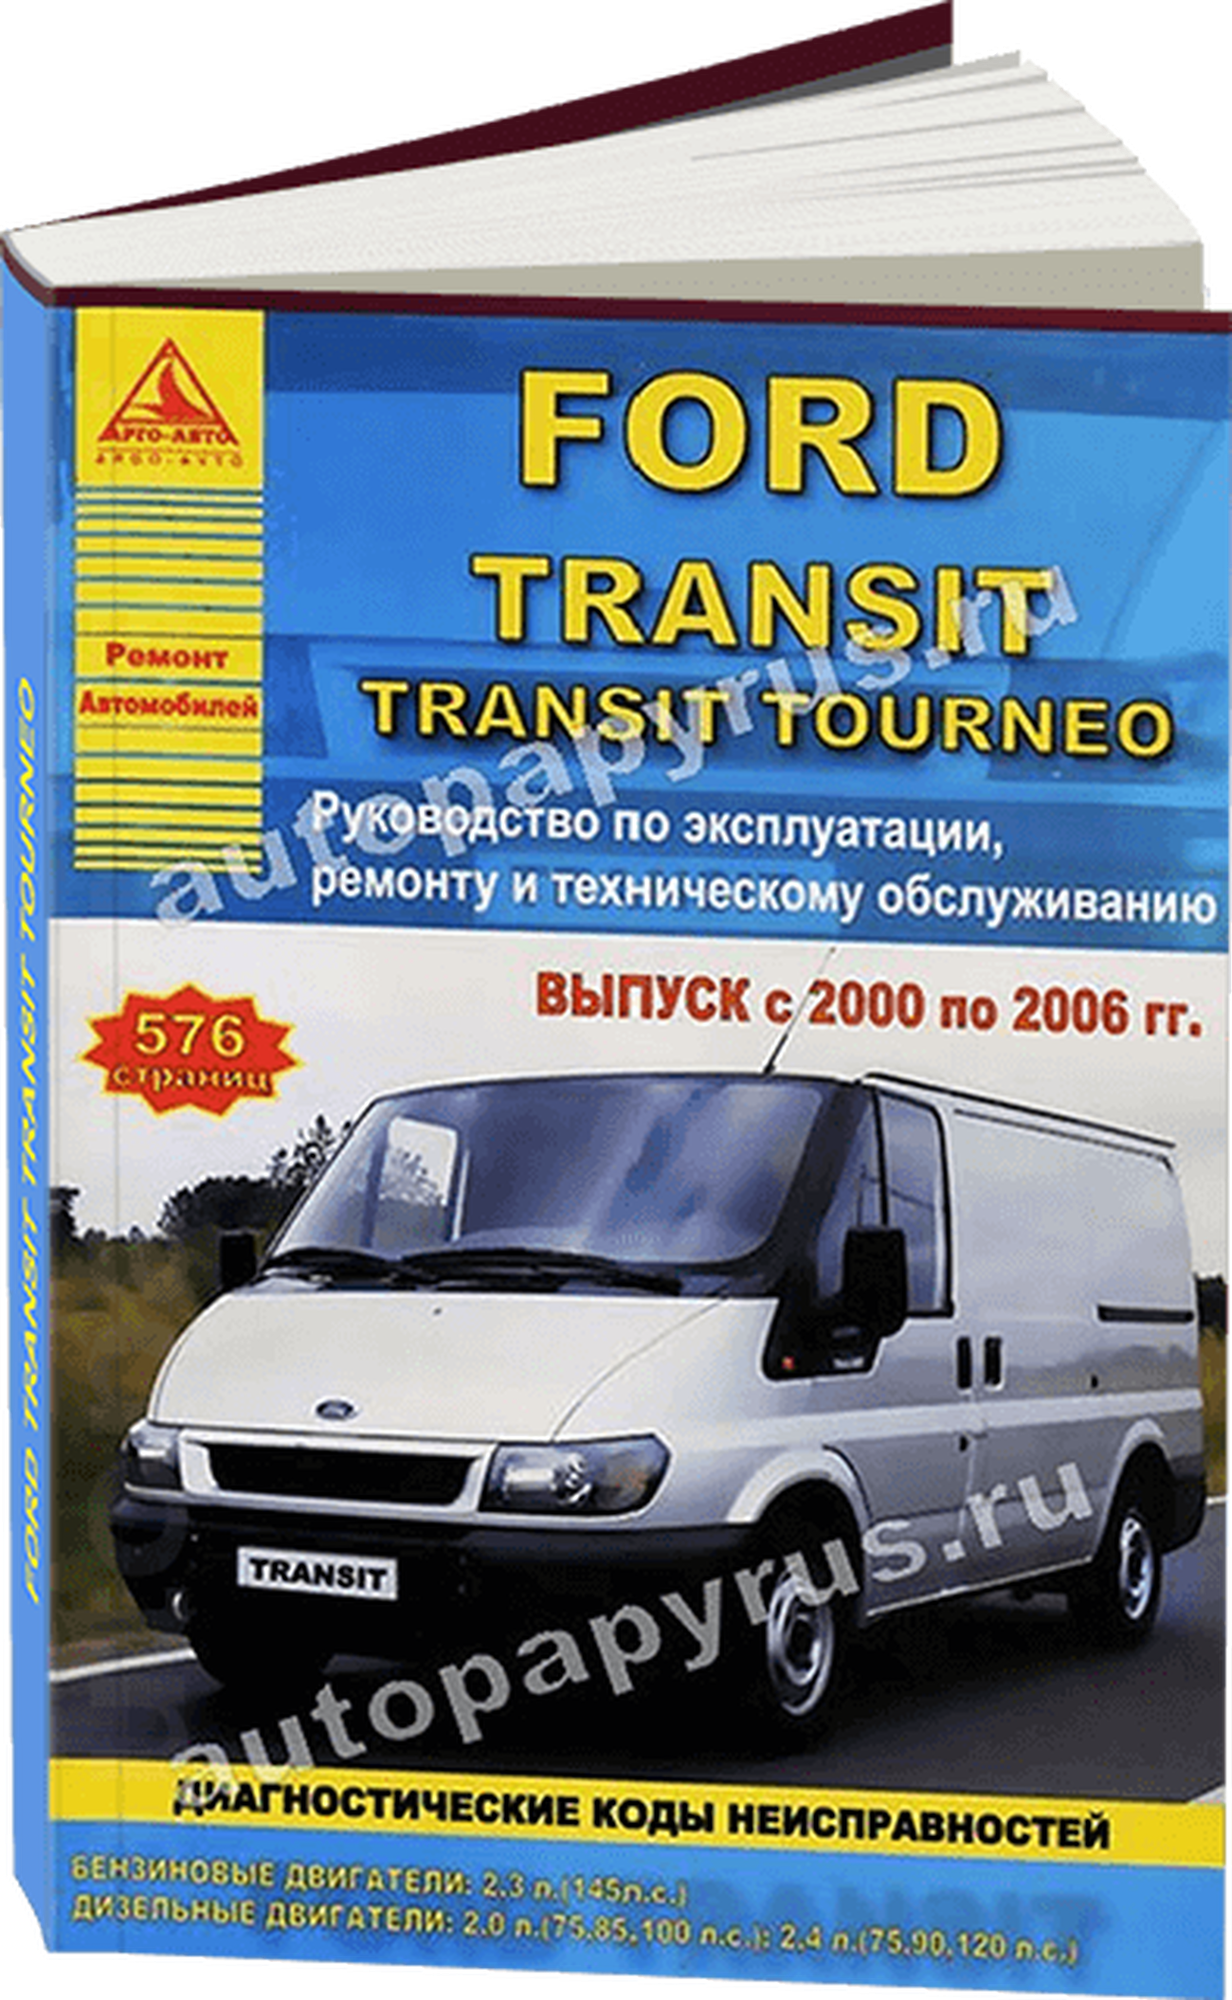 Автокнига: руководство / инструкция по ремонту и эксплуатации FORD TRANSIT (форд транзит) / TRANSIT TOURNEO (транзит турнео) бензин / дизель 2000-2006 годы выпуска 978-5-8245-0136-0 издательство Арго-Авто